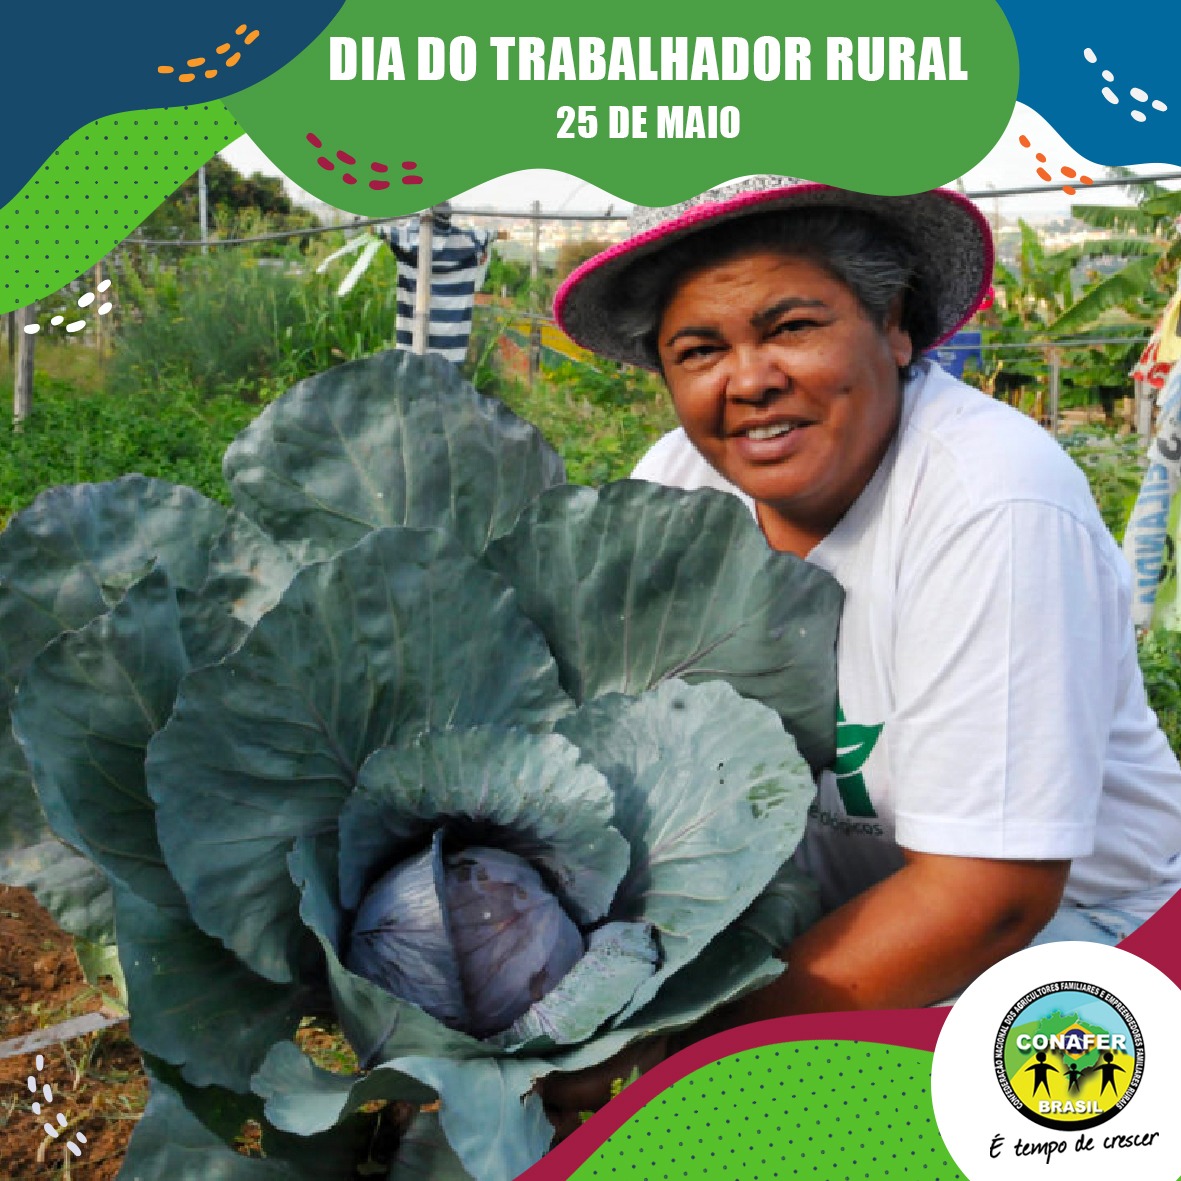 Parabéns aos 10 milhões de trabalhadores e trabalhadoras que alimentam 200 milhões de brasileiros